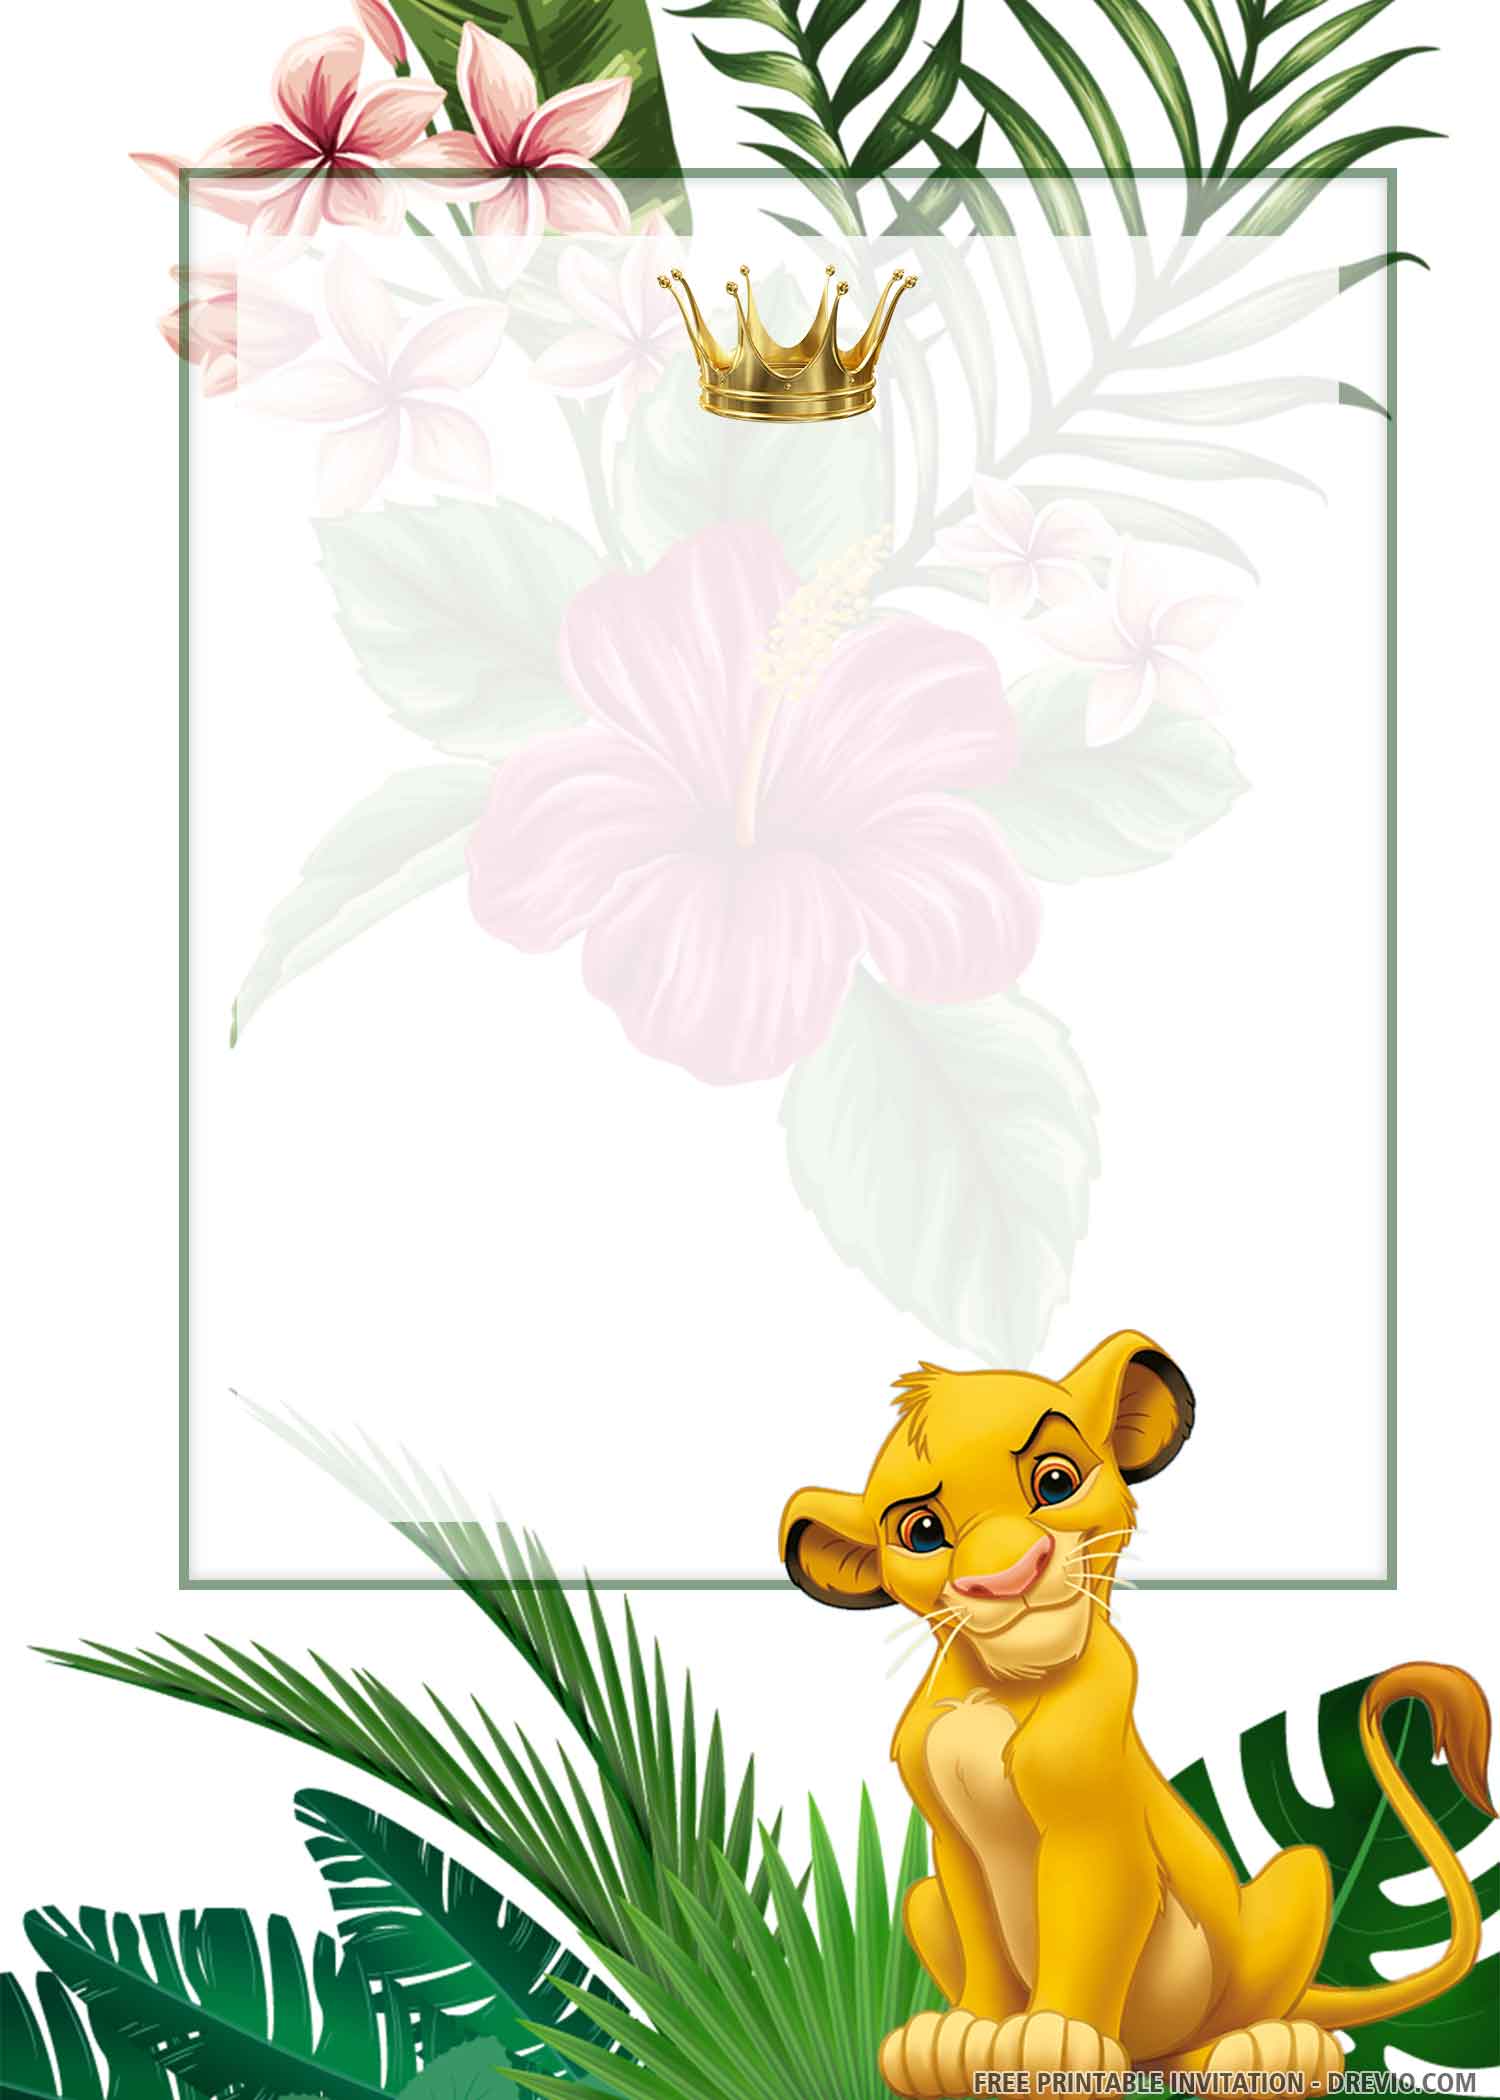 Free Printable Simba Lion King Birthday Invitation Templates Download Hundreds Free Printable Birthday Invitation Templates